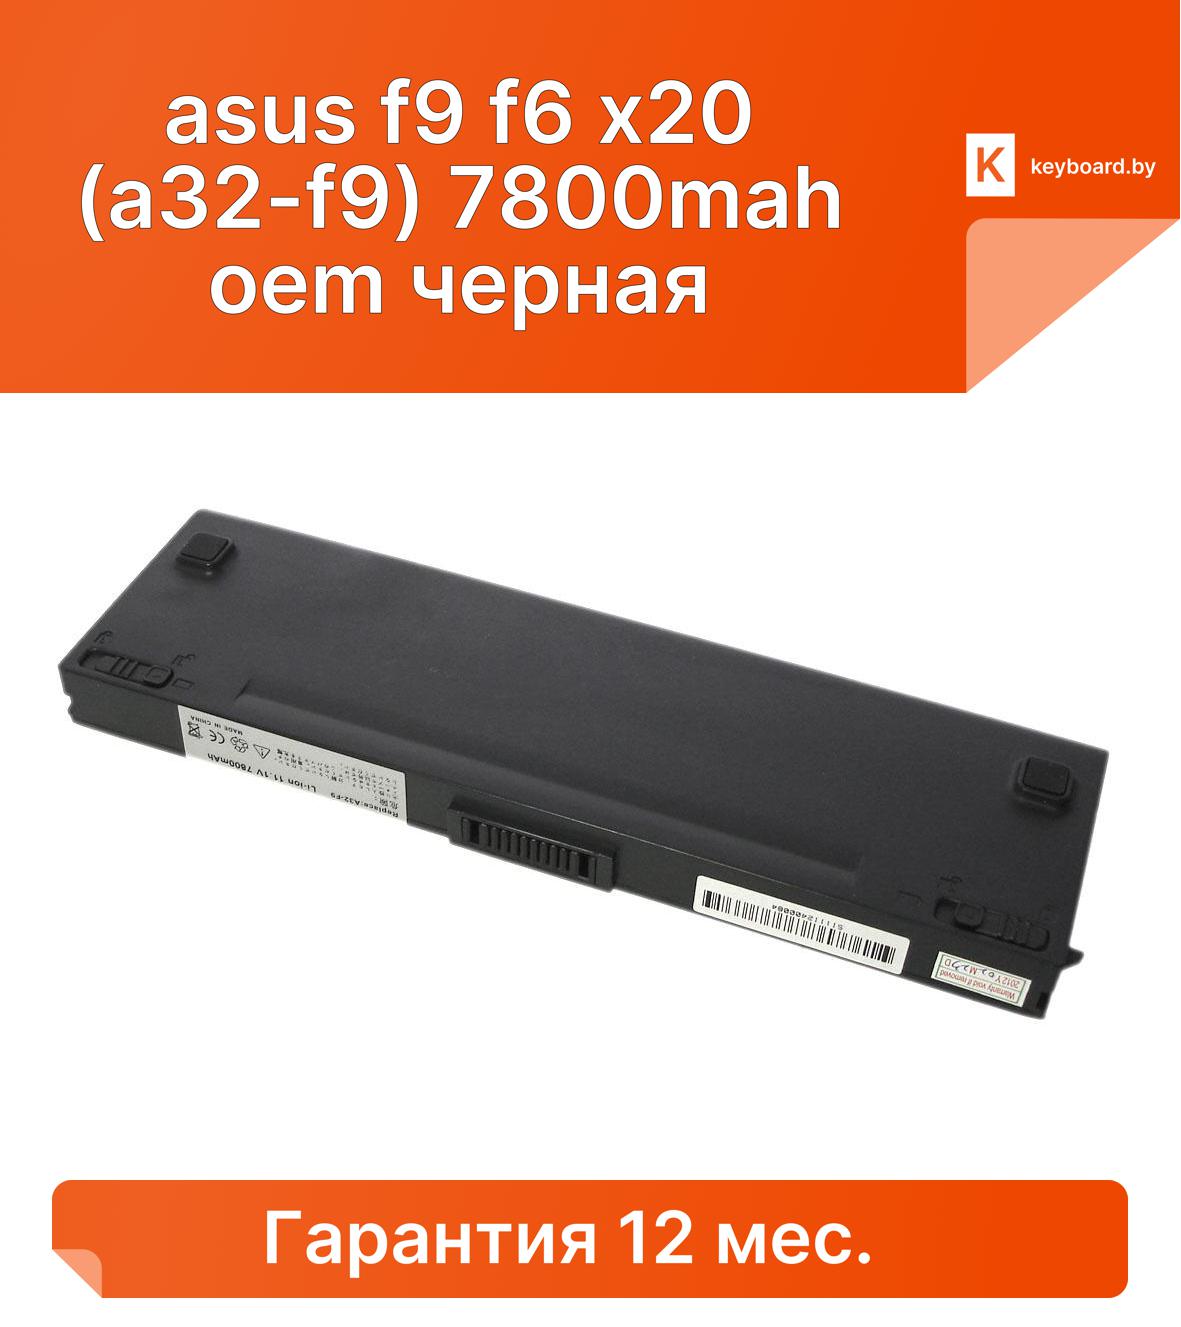 Аккумуляторная батарея для ноутбука asus f9 f6 x20 (a32-f9) 7800mah oem черная